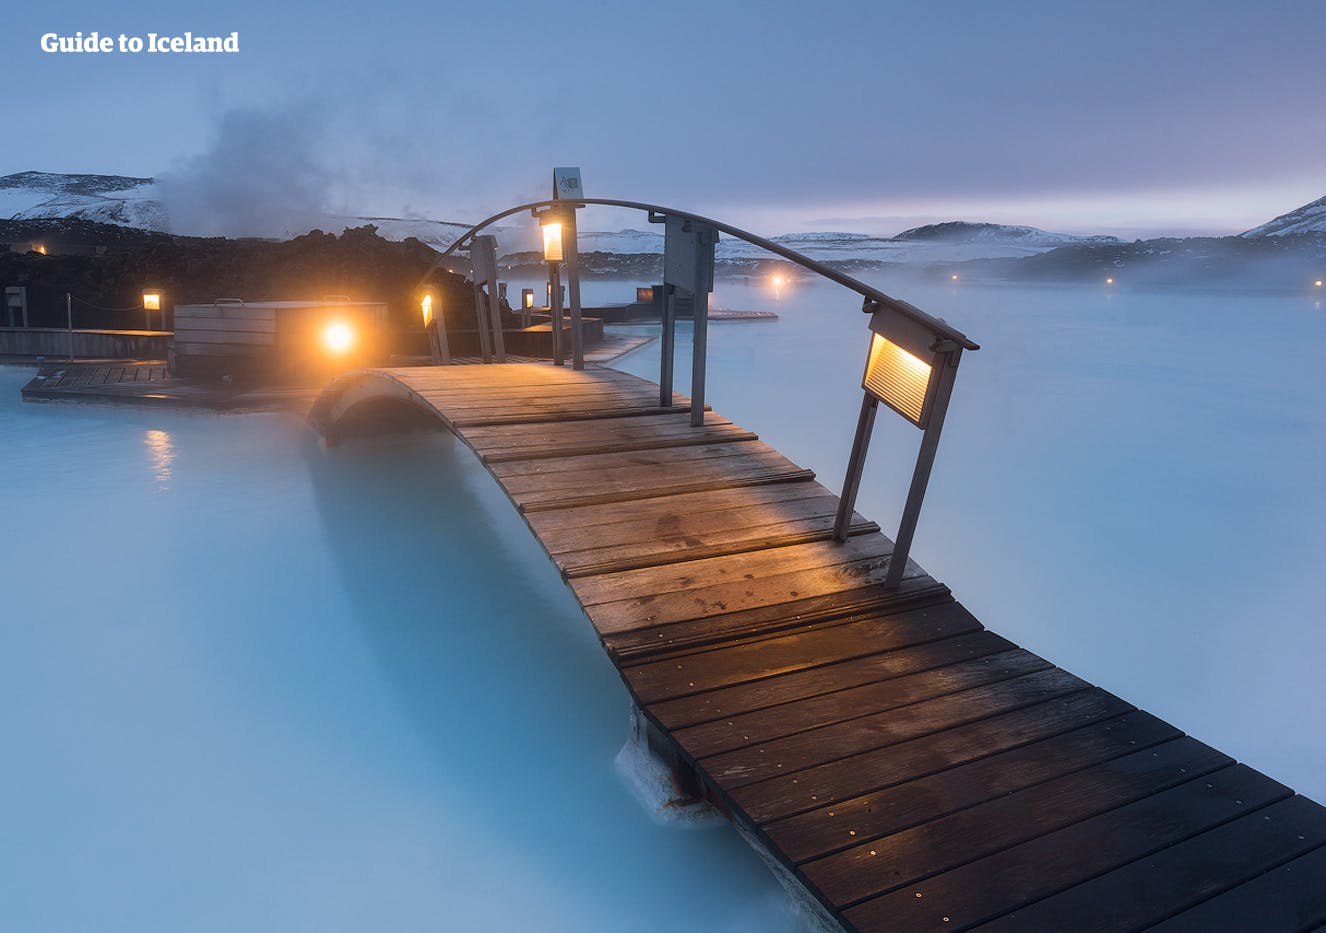 在蓝湖温泉的温润泉水中洗去长途旅行的疲惫，精神饱满地开启您的冰岛旅行